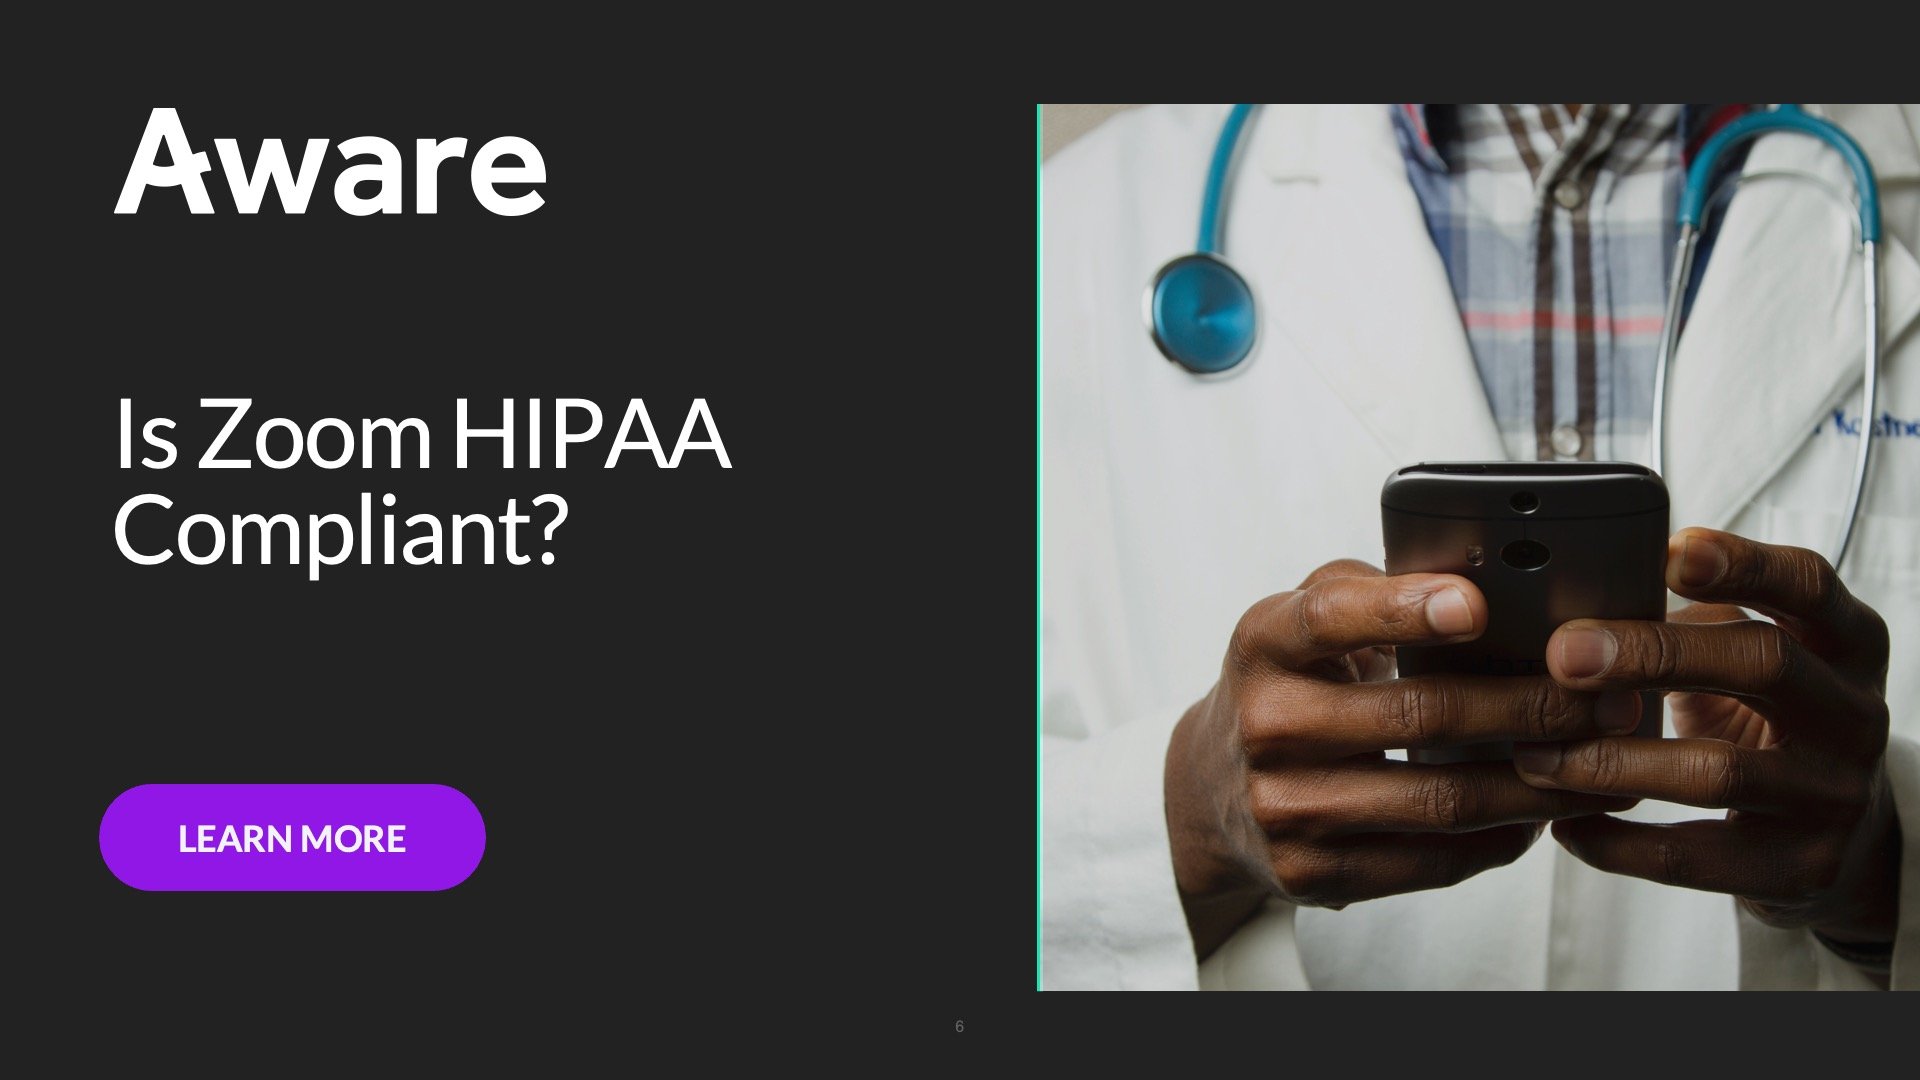 Is Zoom HIPAA Compliant?